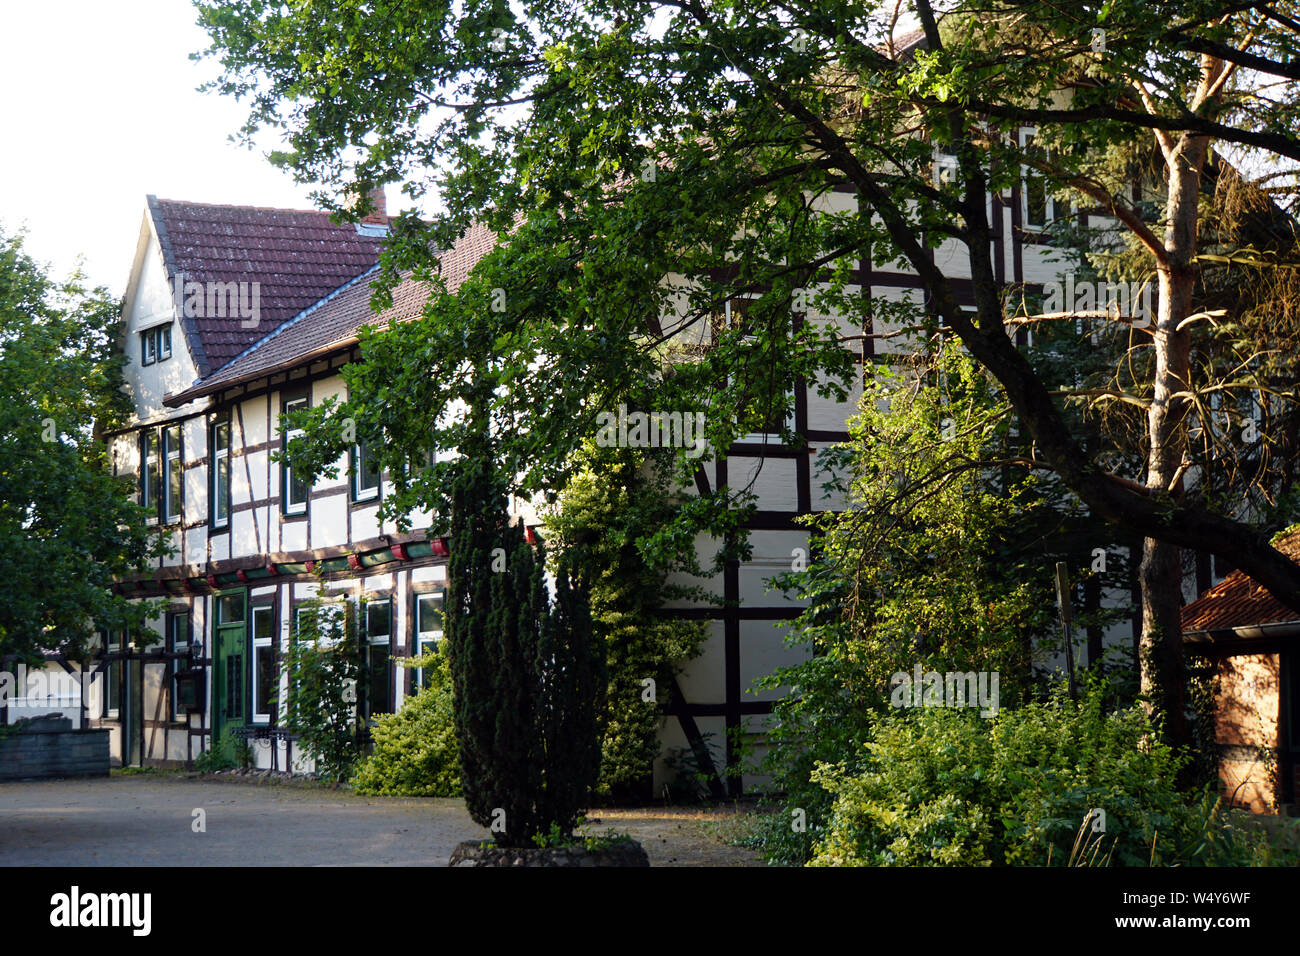 historisches Fachwerkhaus altes Wegehaus, Meinersen, Niedersachsen, Deutschland Stock Photo